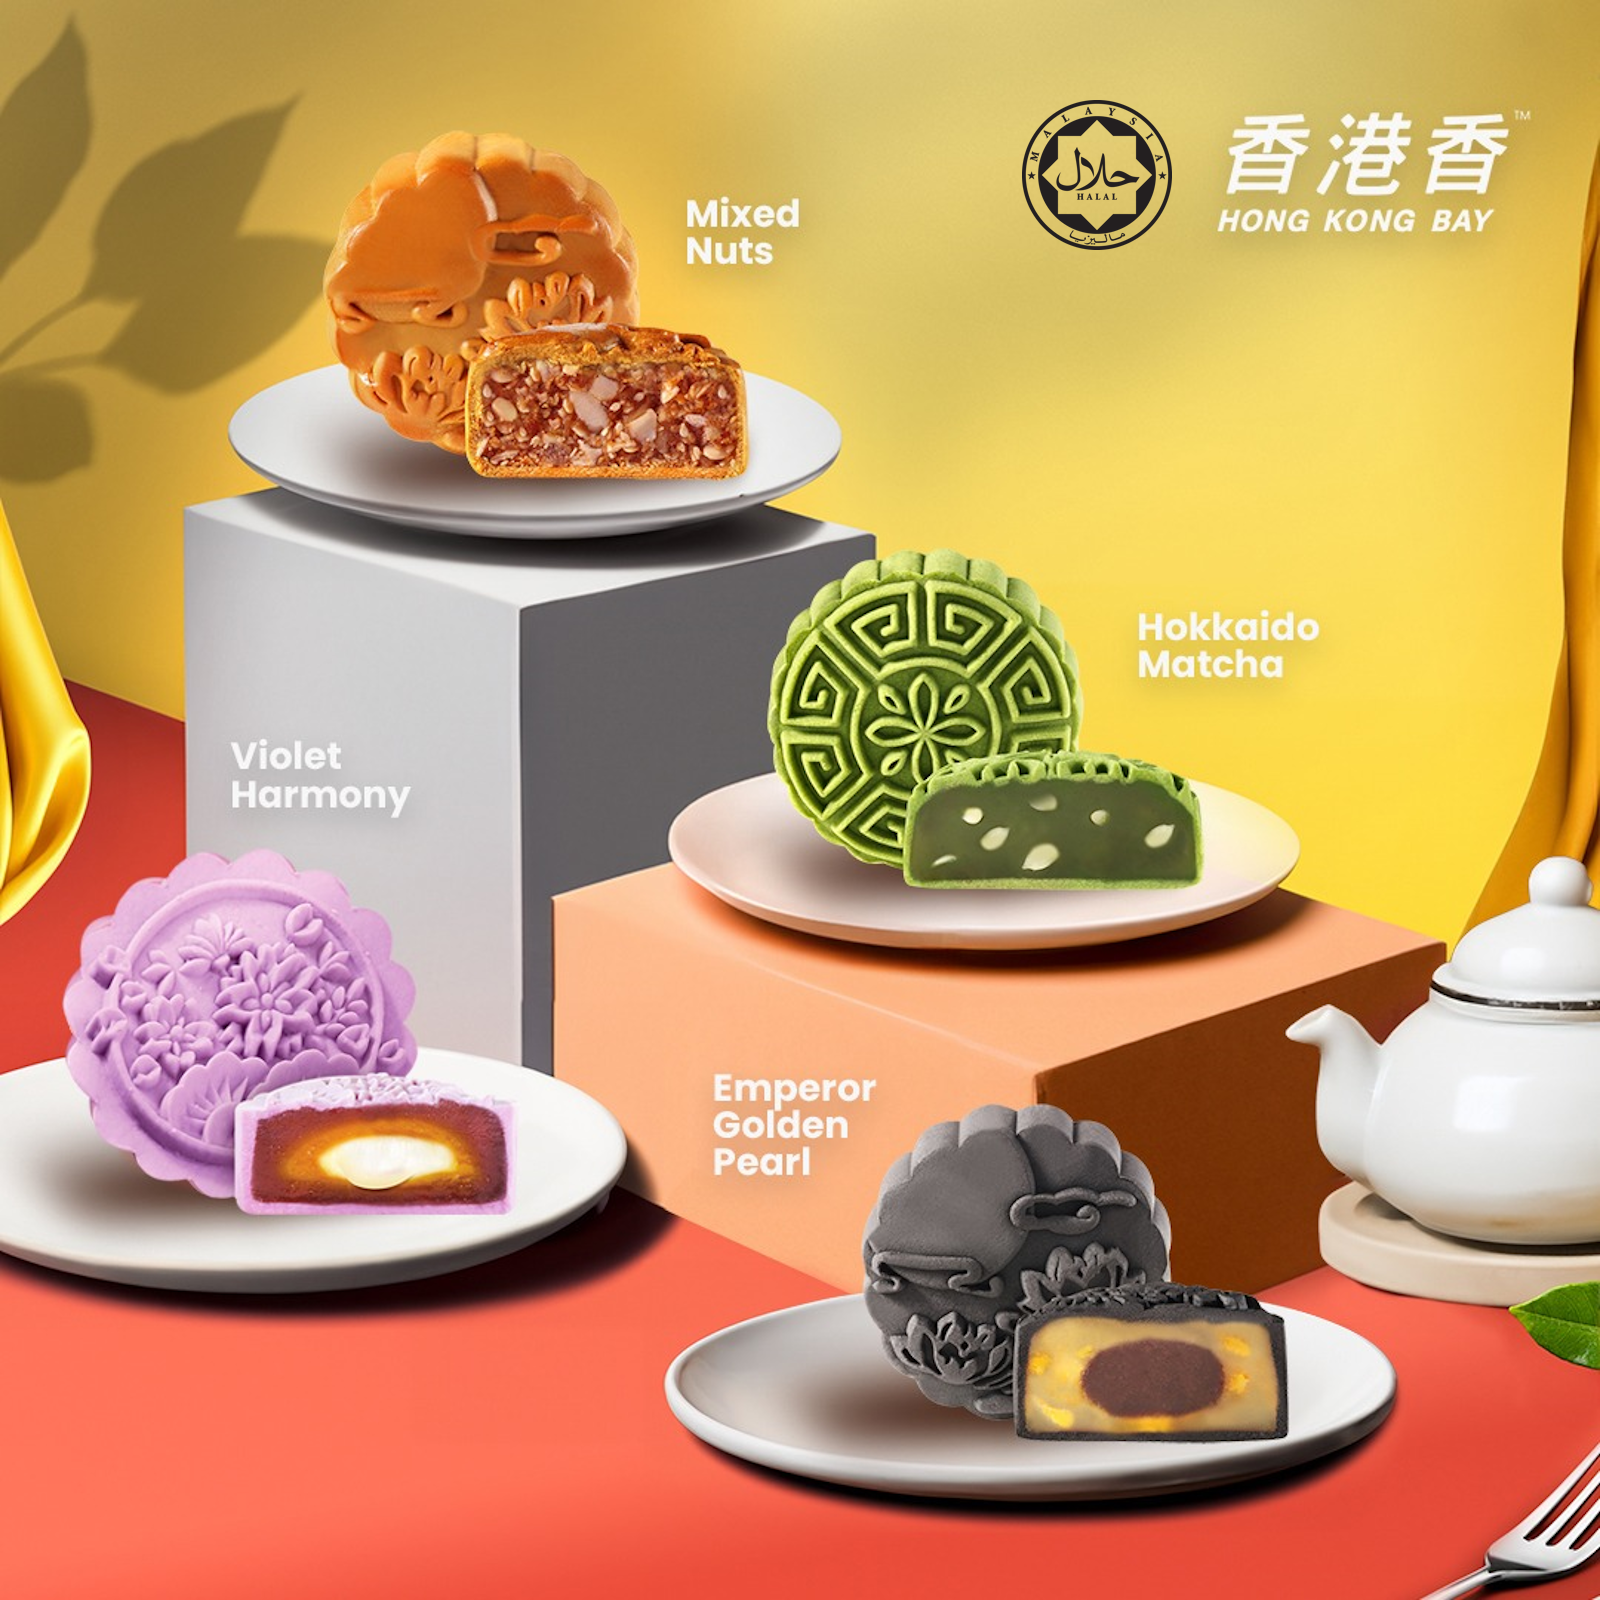 Mixed Nuts + Hokkaido Matcha + Violet Harmony + Emperor Golden Pearl